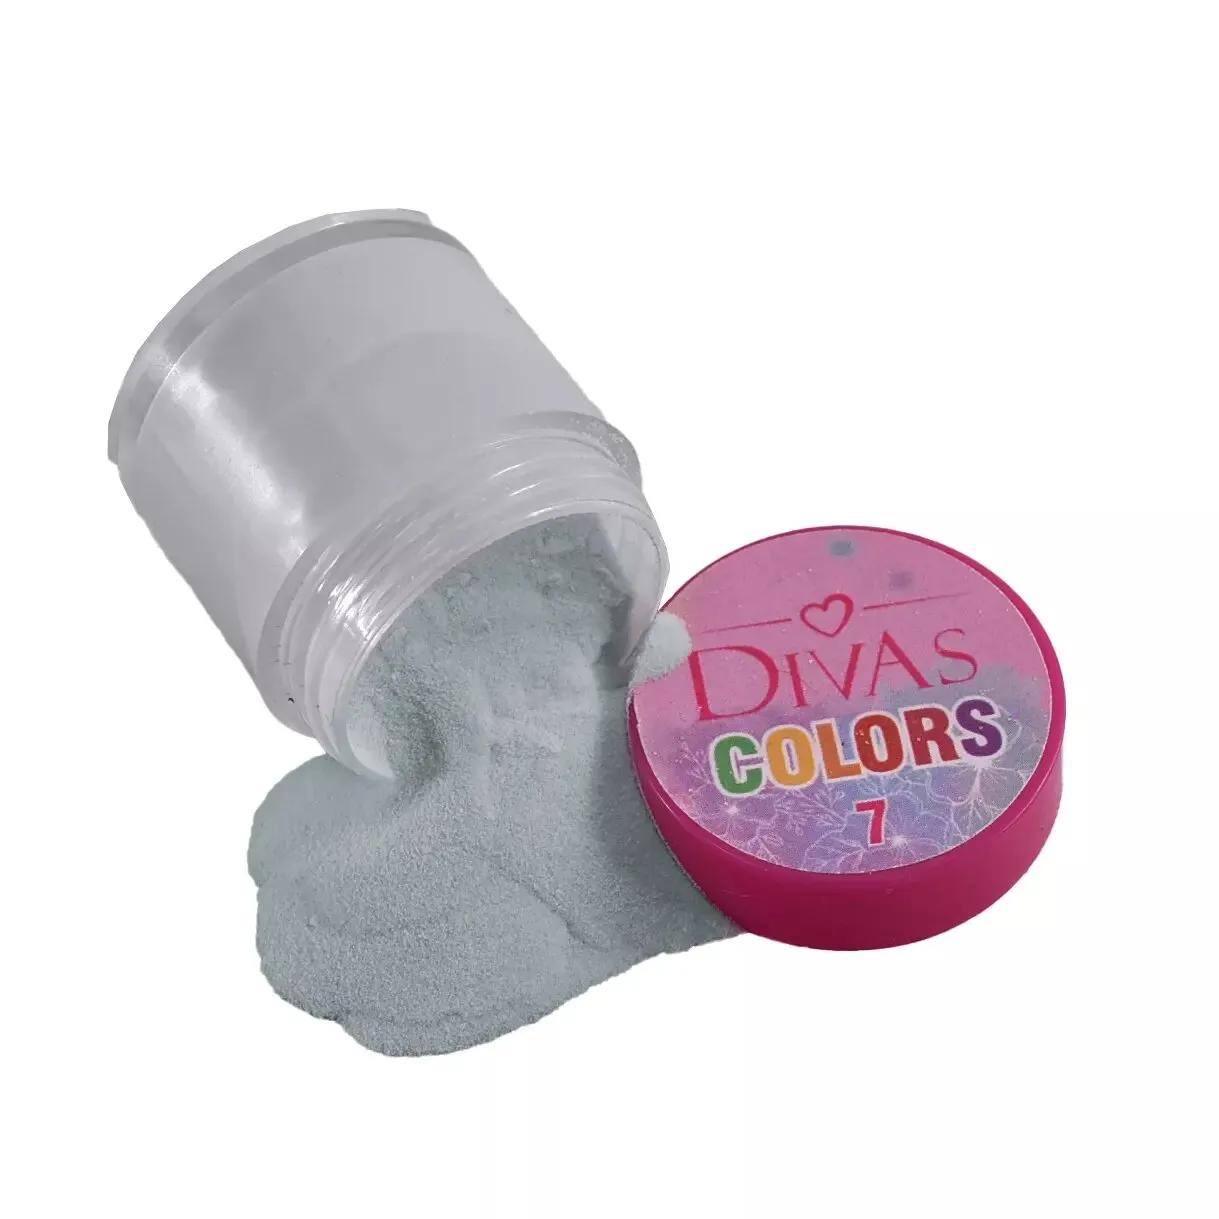 D.Divas Colors 7